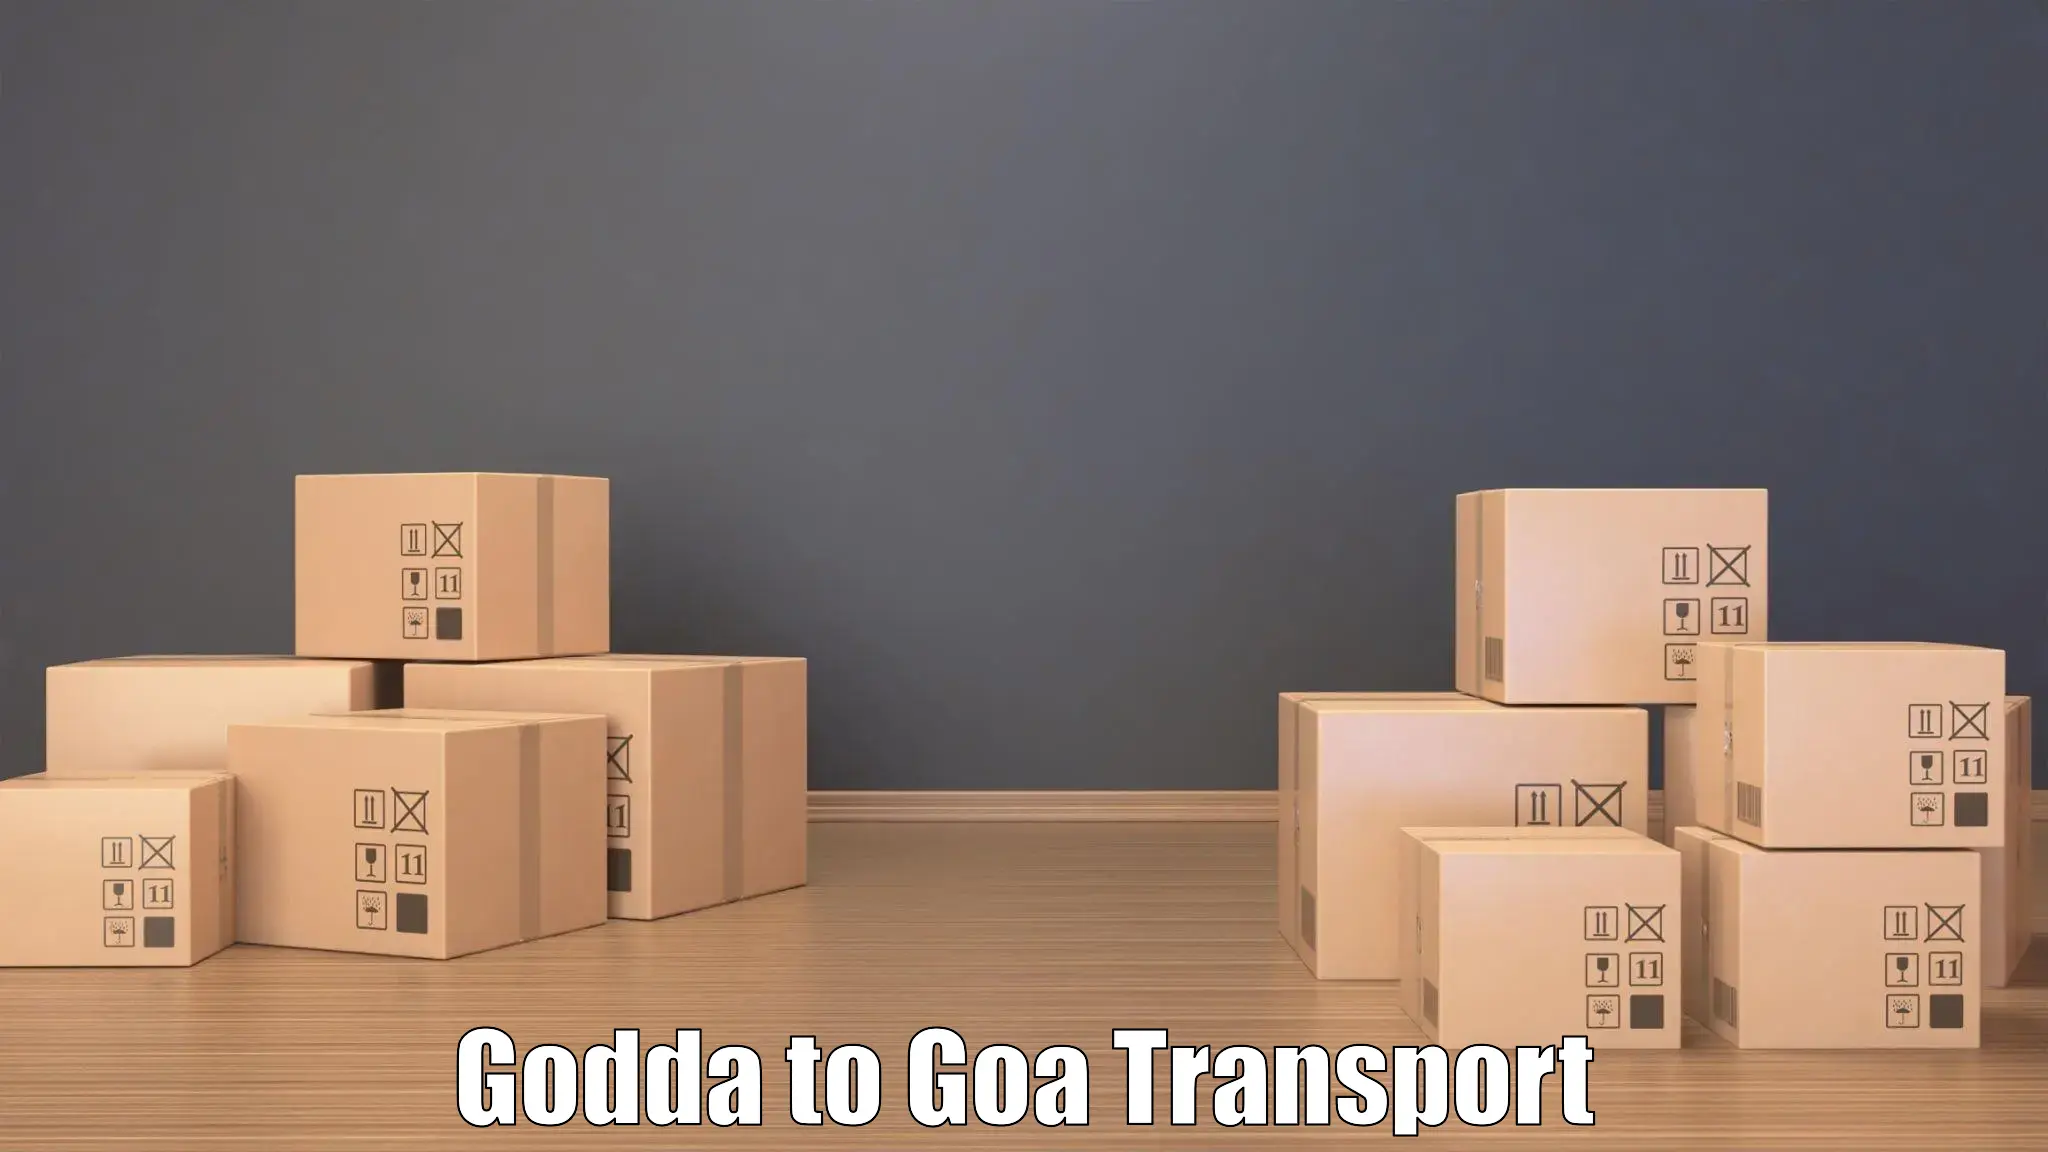 Transport in sharing Godda to Panaji